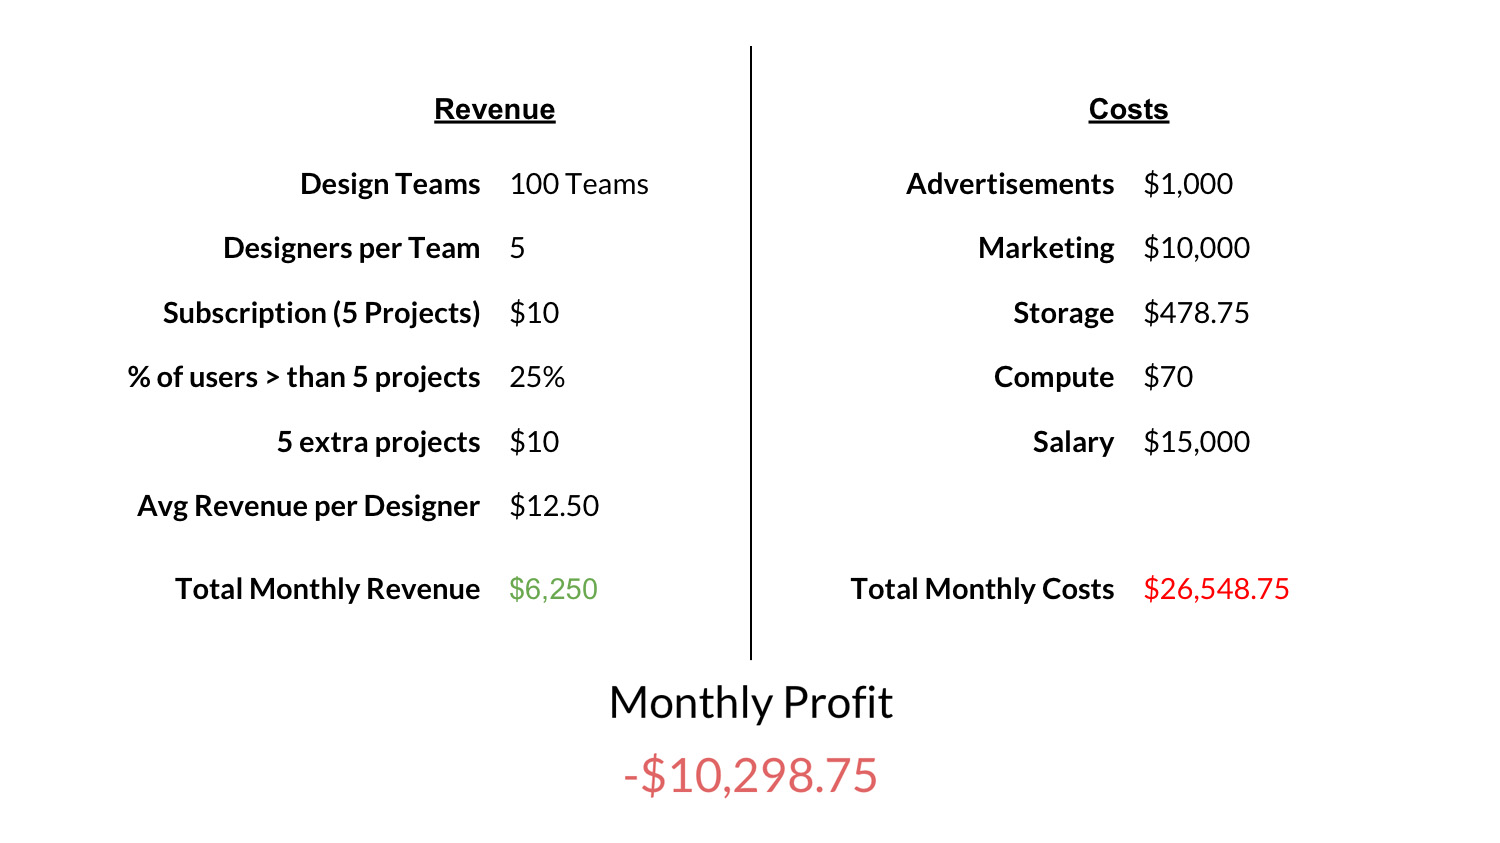 Revenues & Costs